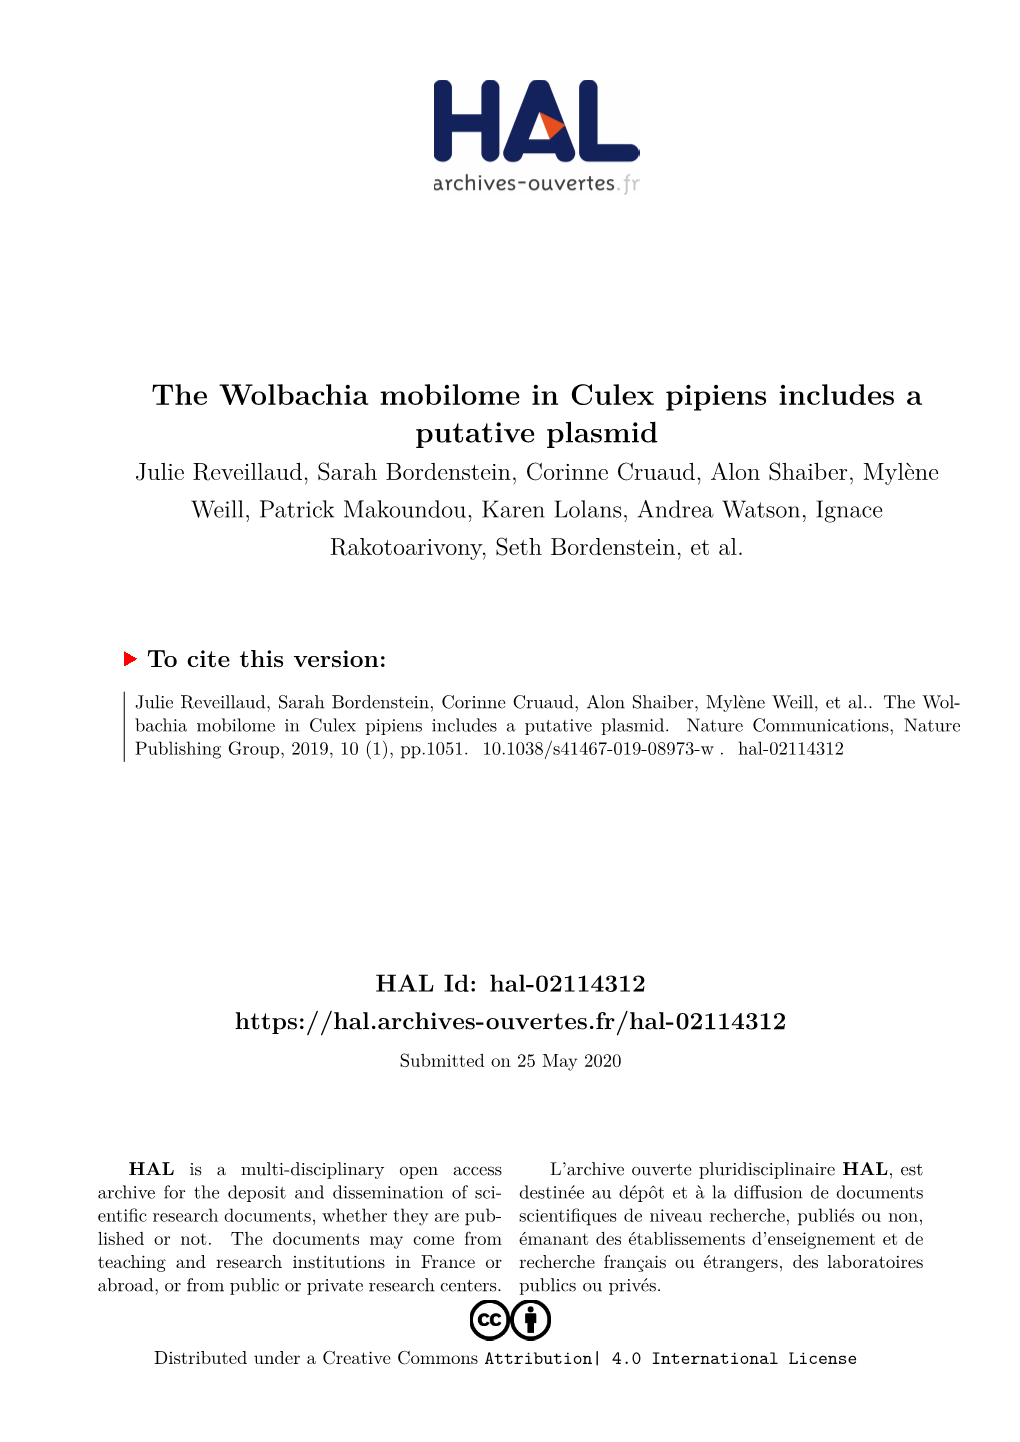 The Wolbachia Mobilome in Culex Pipiens